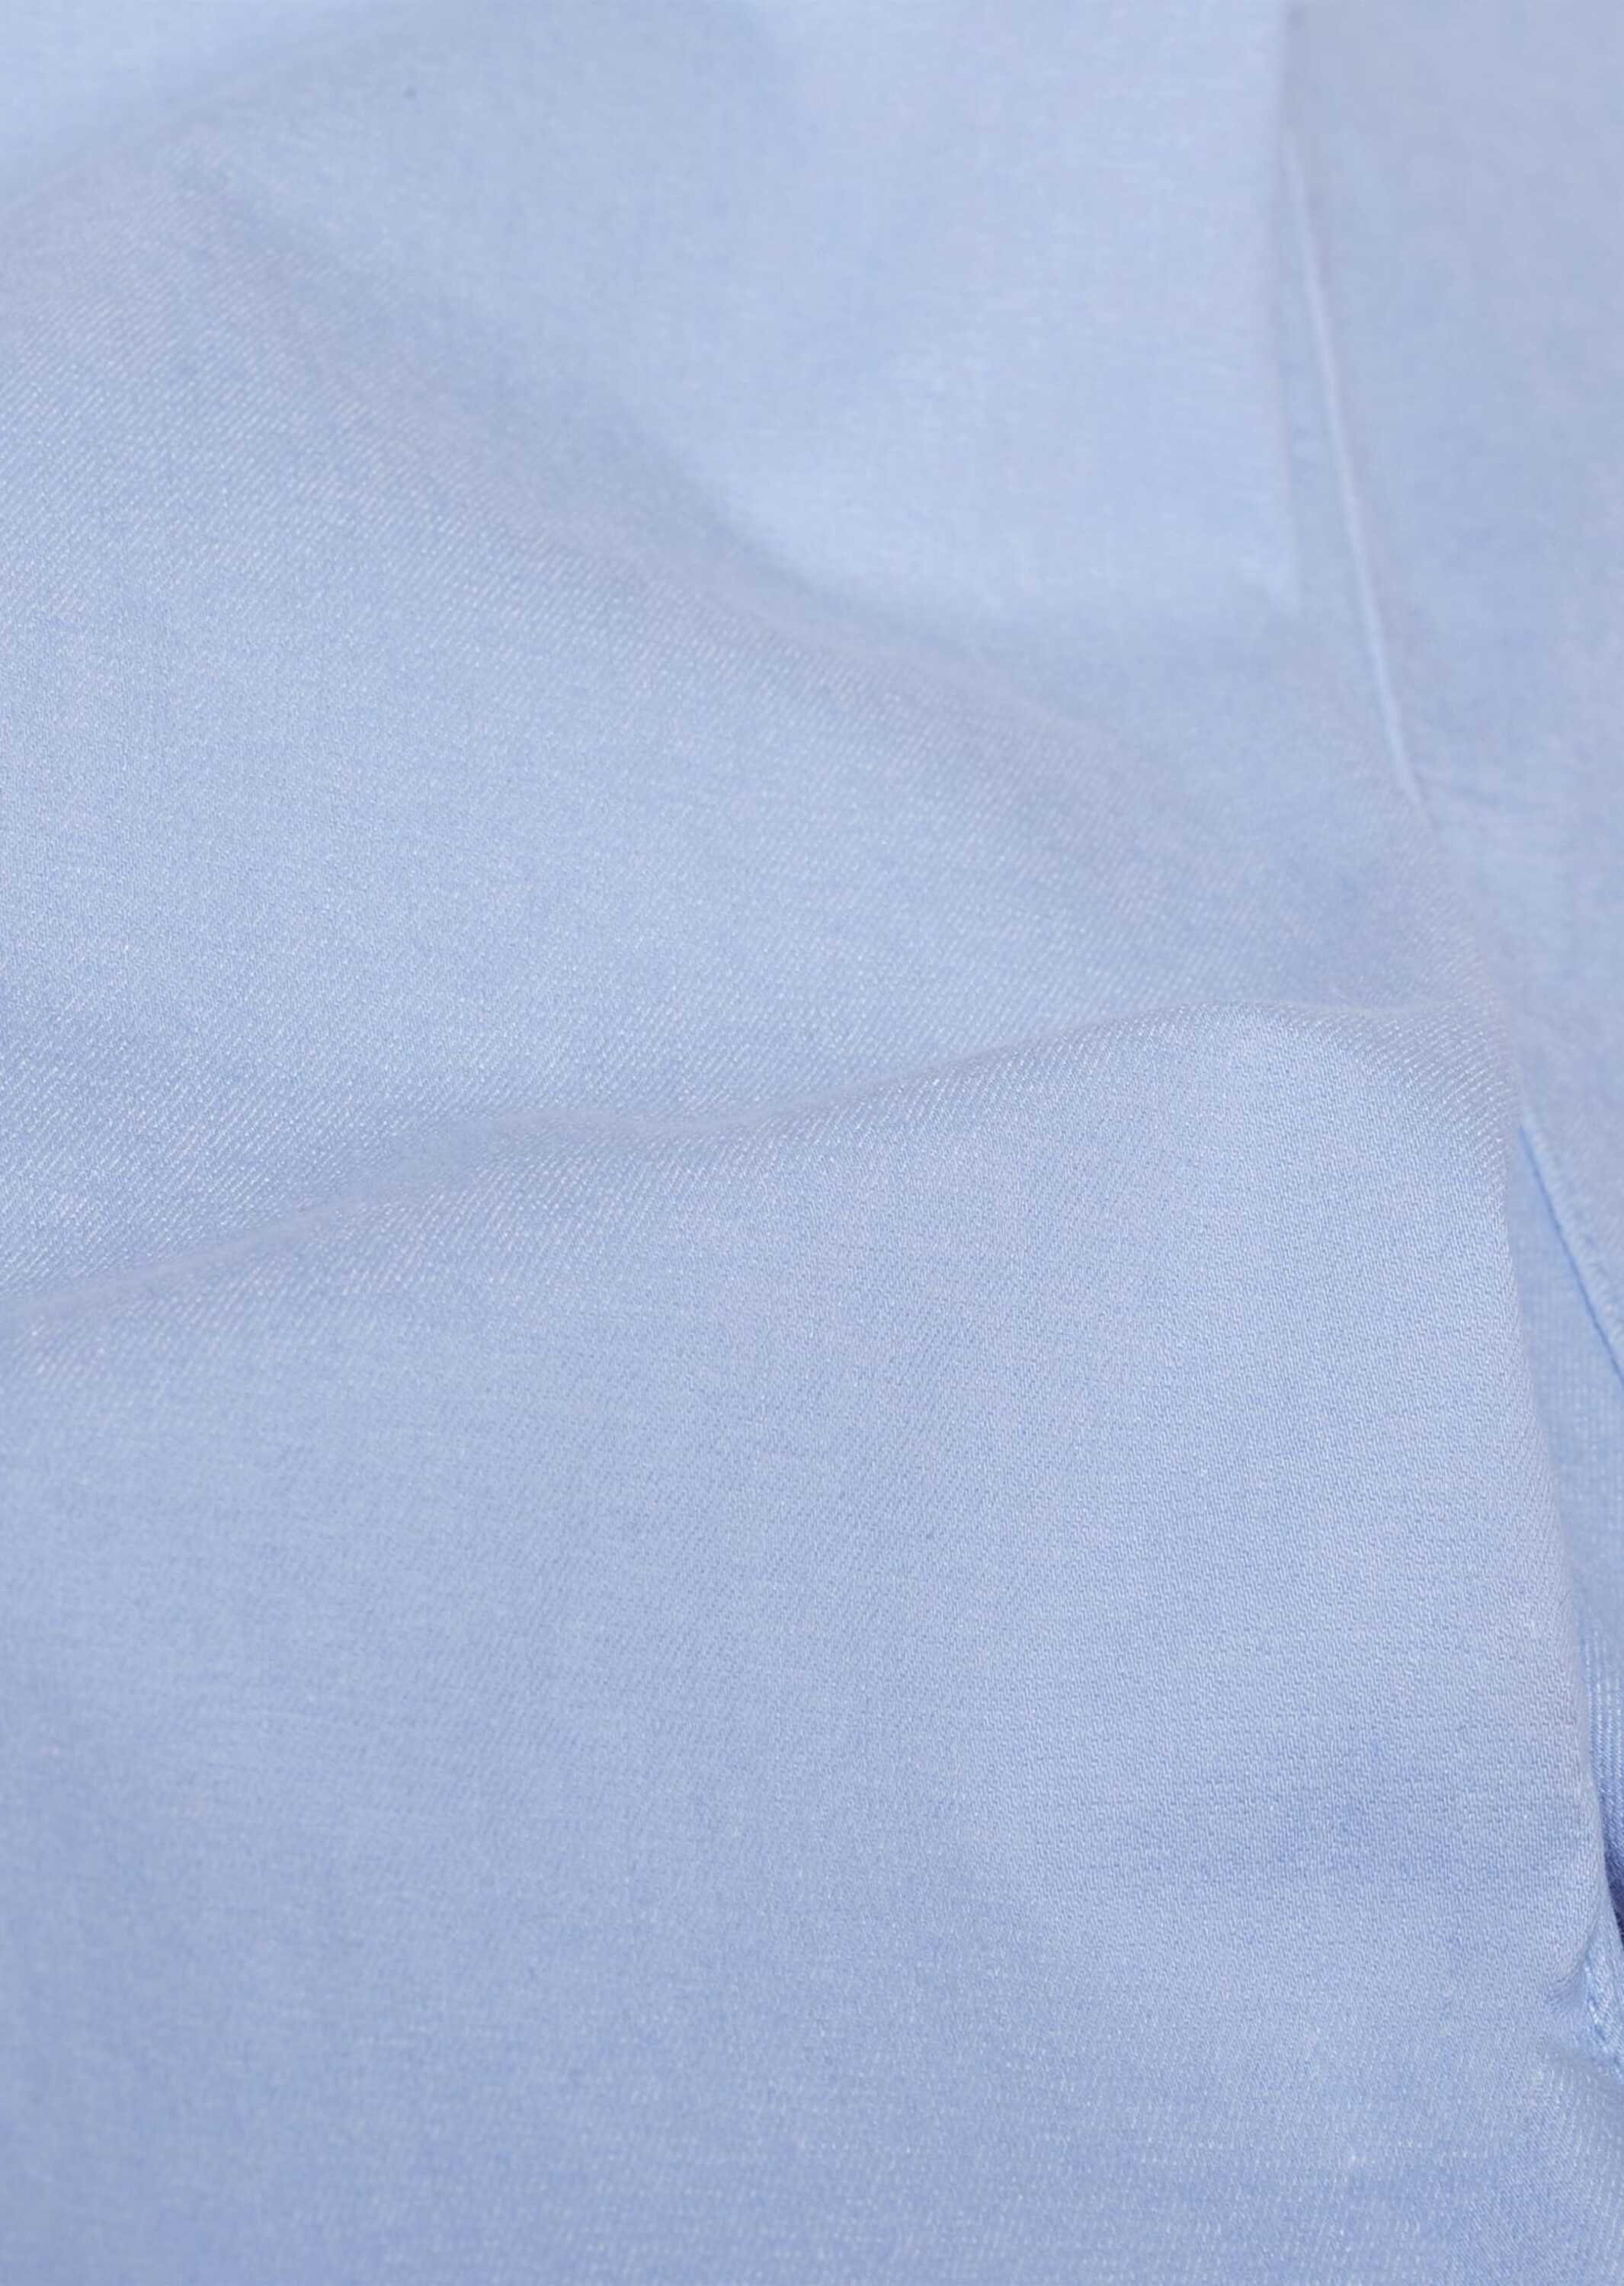 himmelblau aus Bella GOLDNER volle Ohne 7/8-Caprijeans 7/8-Jeanshose Bewegungsfreiheit Qualität superelastischer für